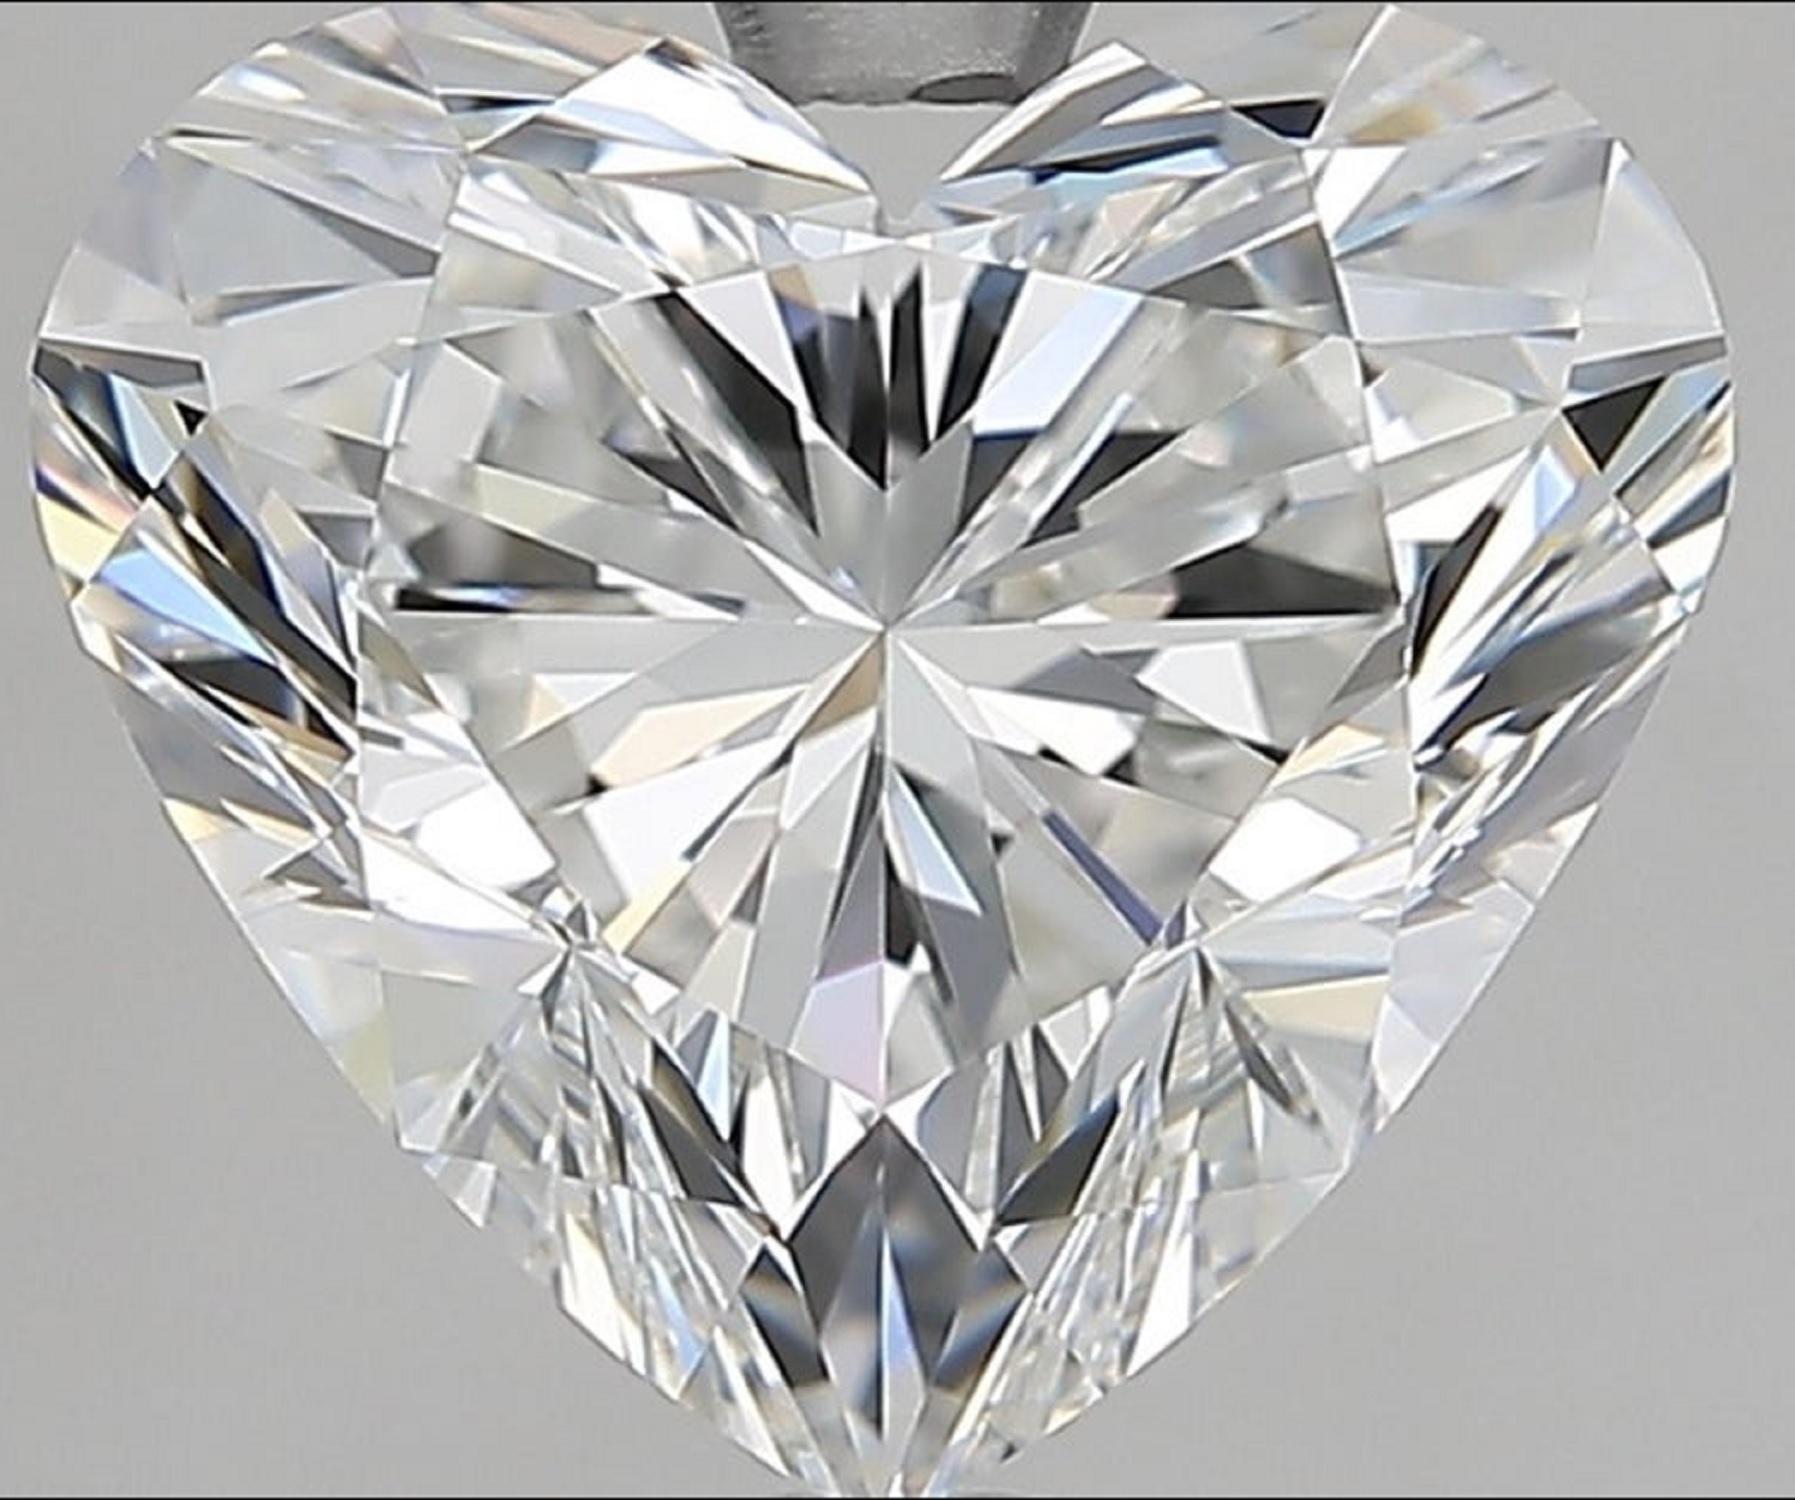 Bague en forme de cœur avec diamant certifié GIA de 10 carats 
la pierre principale pèse 2.23 carats 
F COLOR
VS2 CLARITÉ
excellente coupe et polissage
faible fluorescence